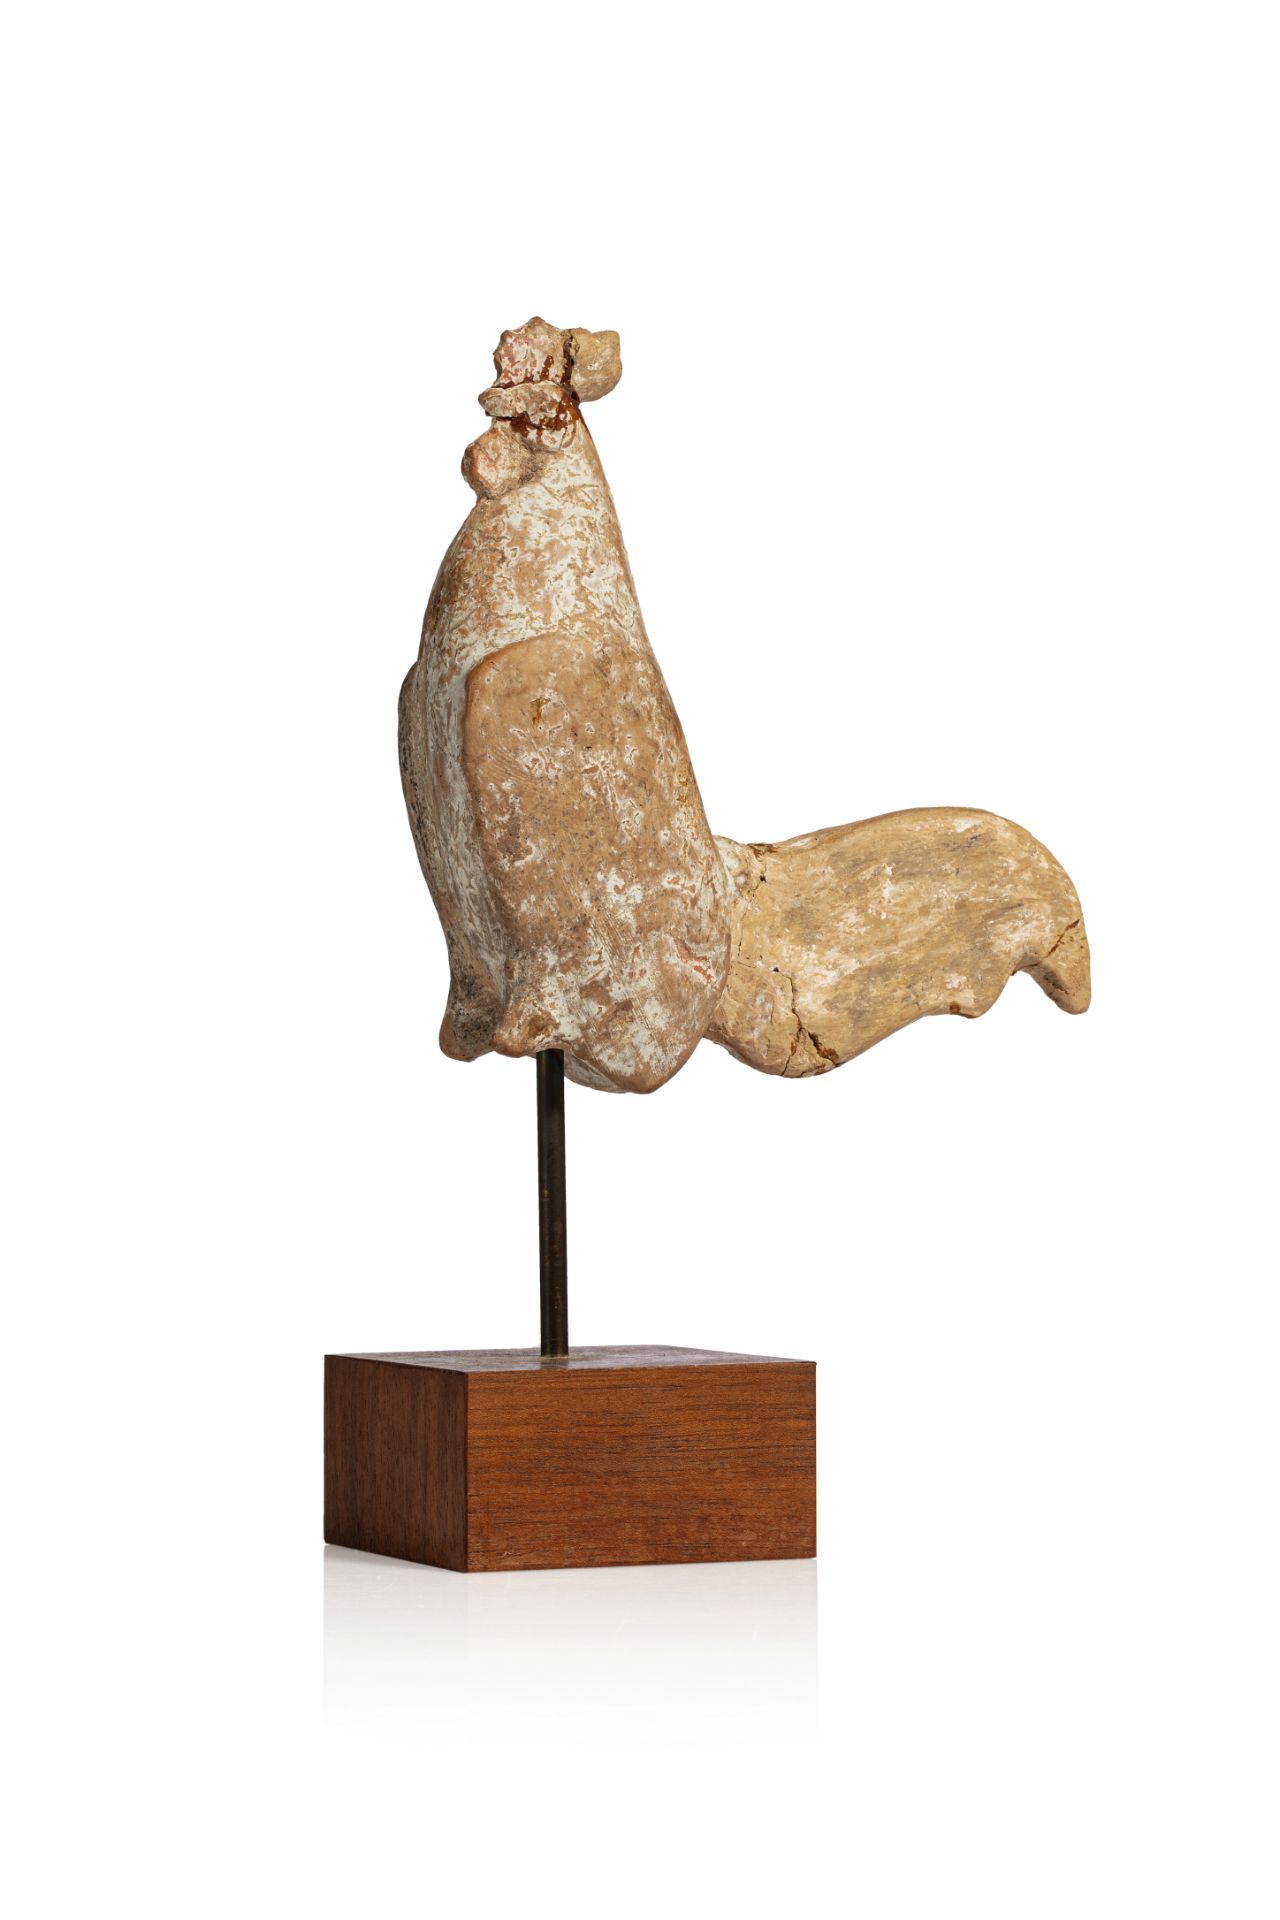 Statuette représentant un coq, les pattes terminées en moignons. La crête et les [...]